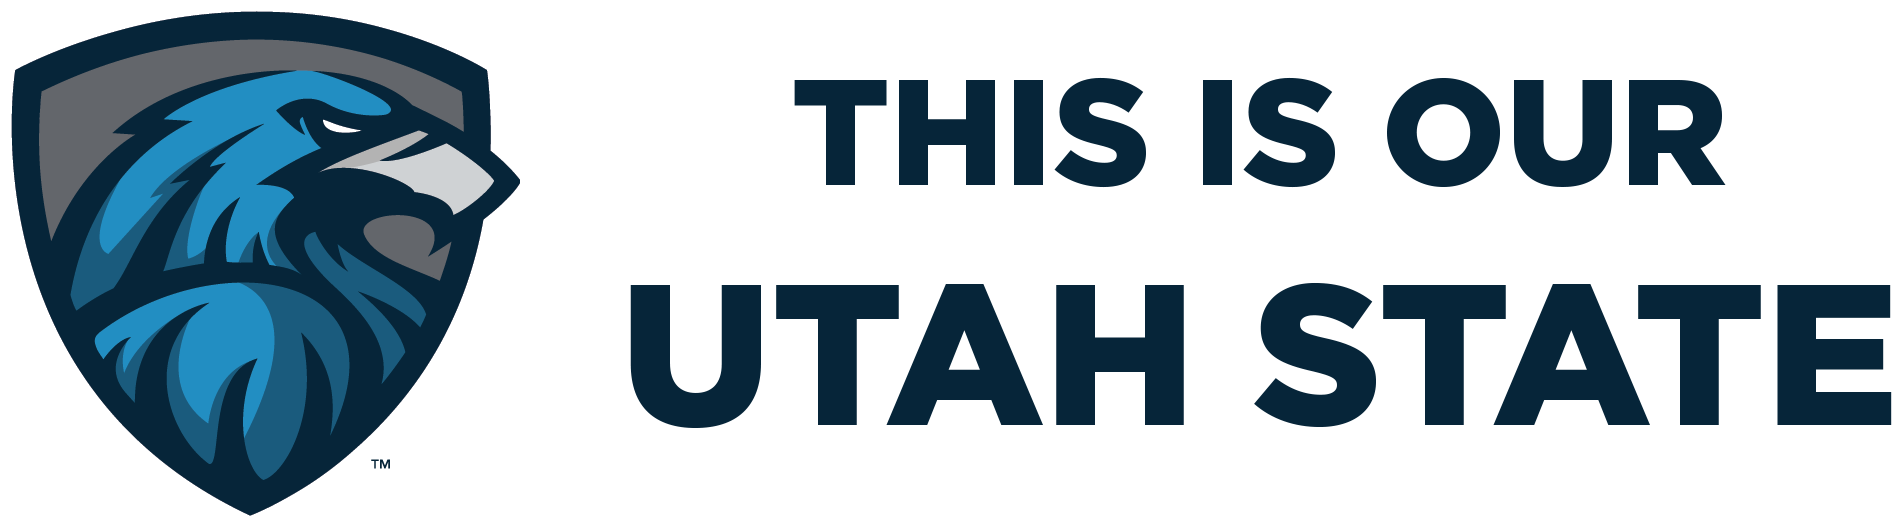 Utah State University Logoand Motto PNG